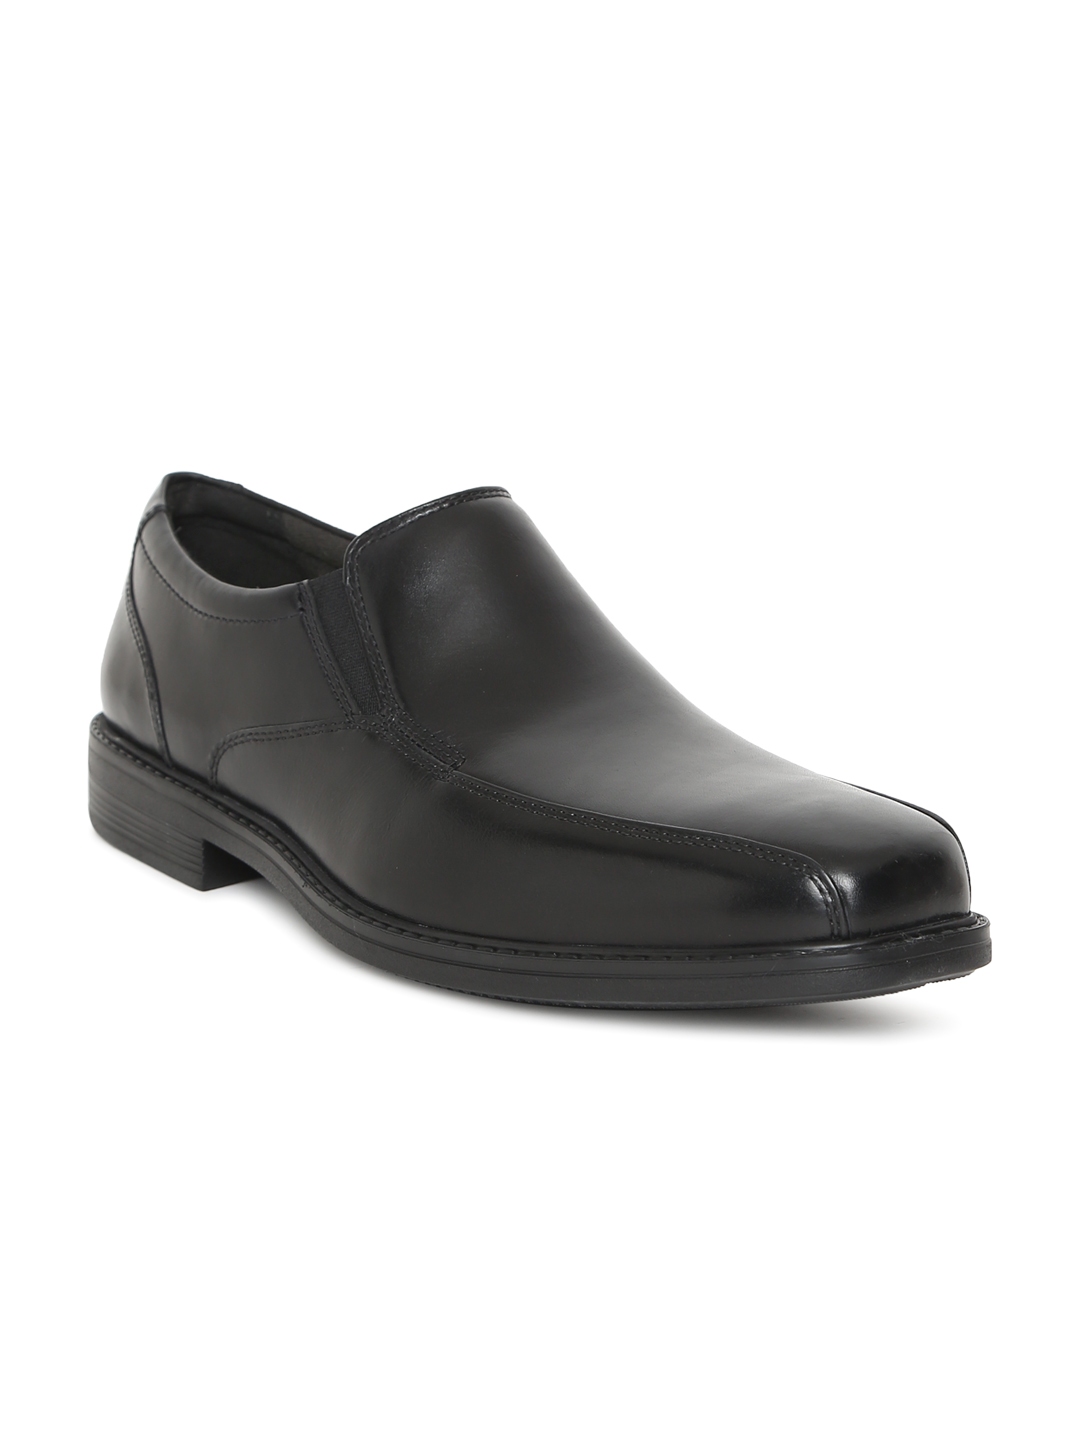 Buy Clarks Men Black Leather Bolton Free Formal Slip Ons - Formal Shoes ...